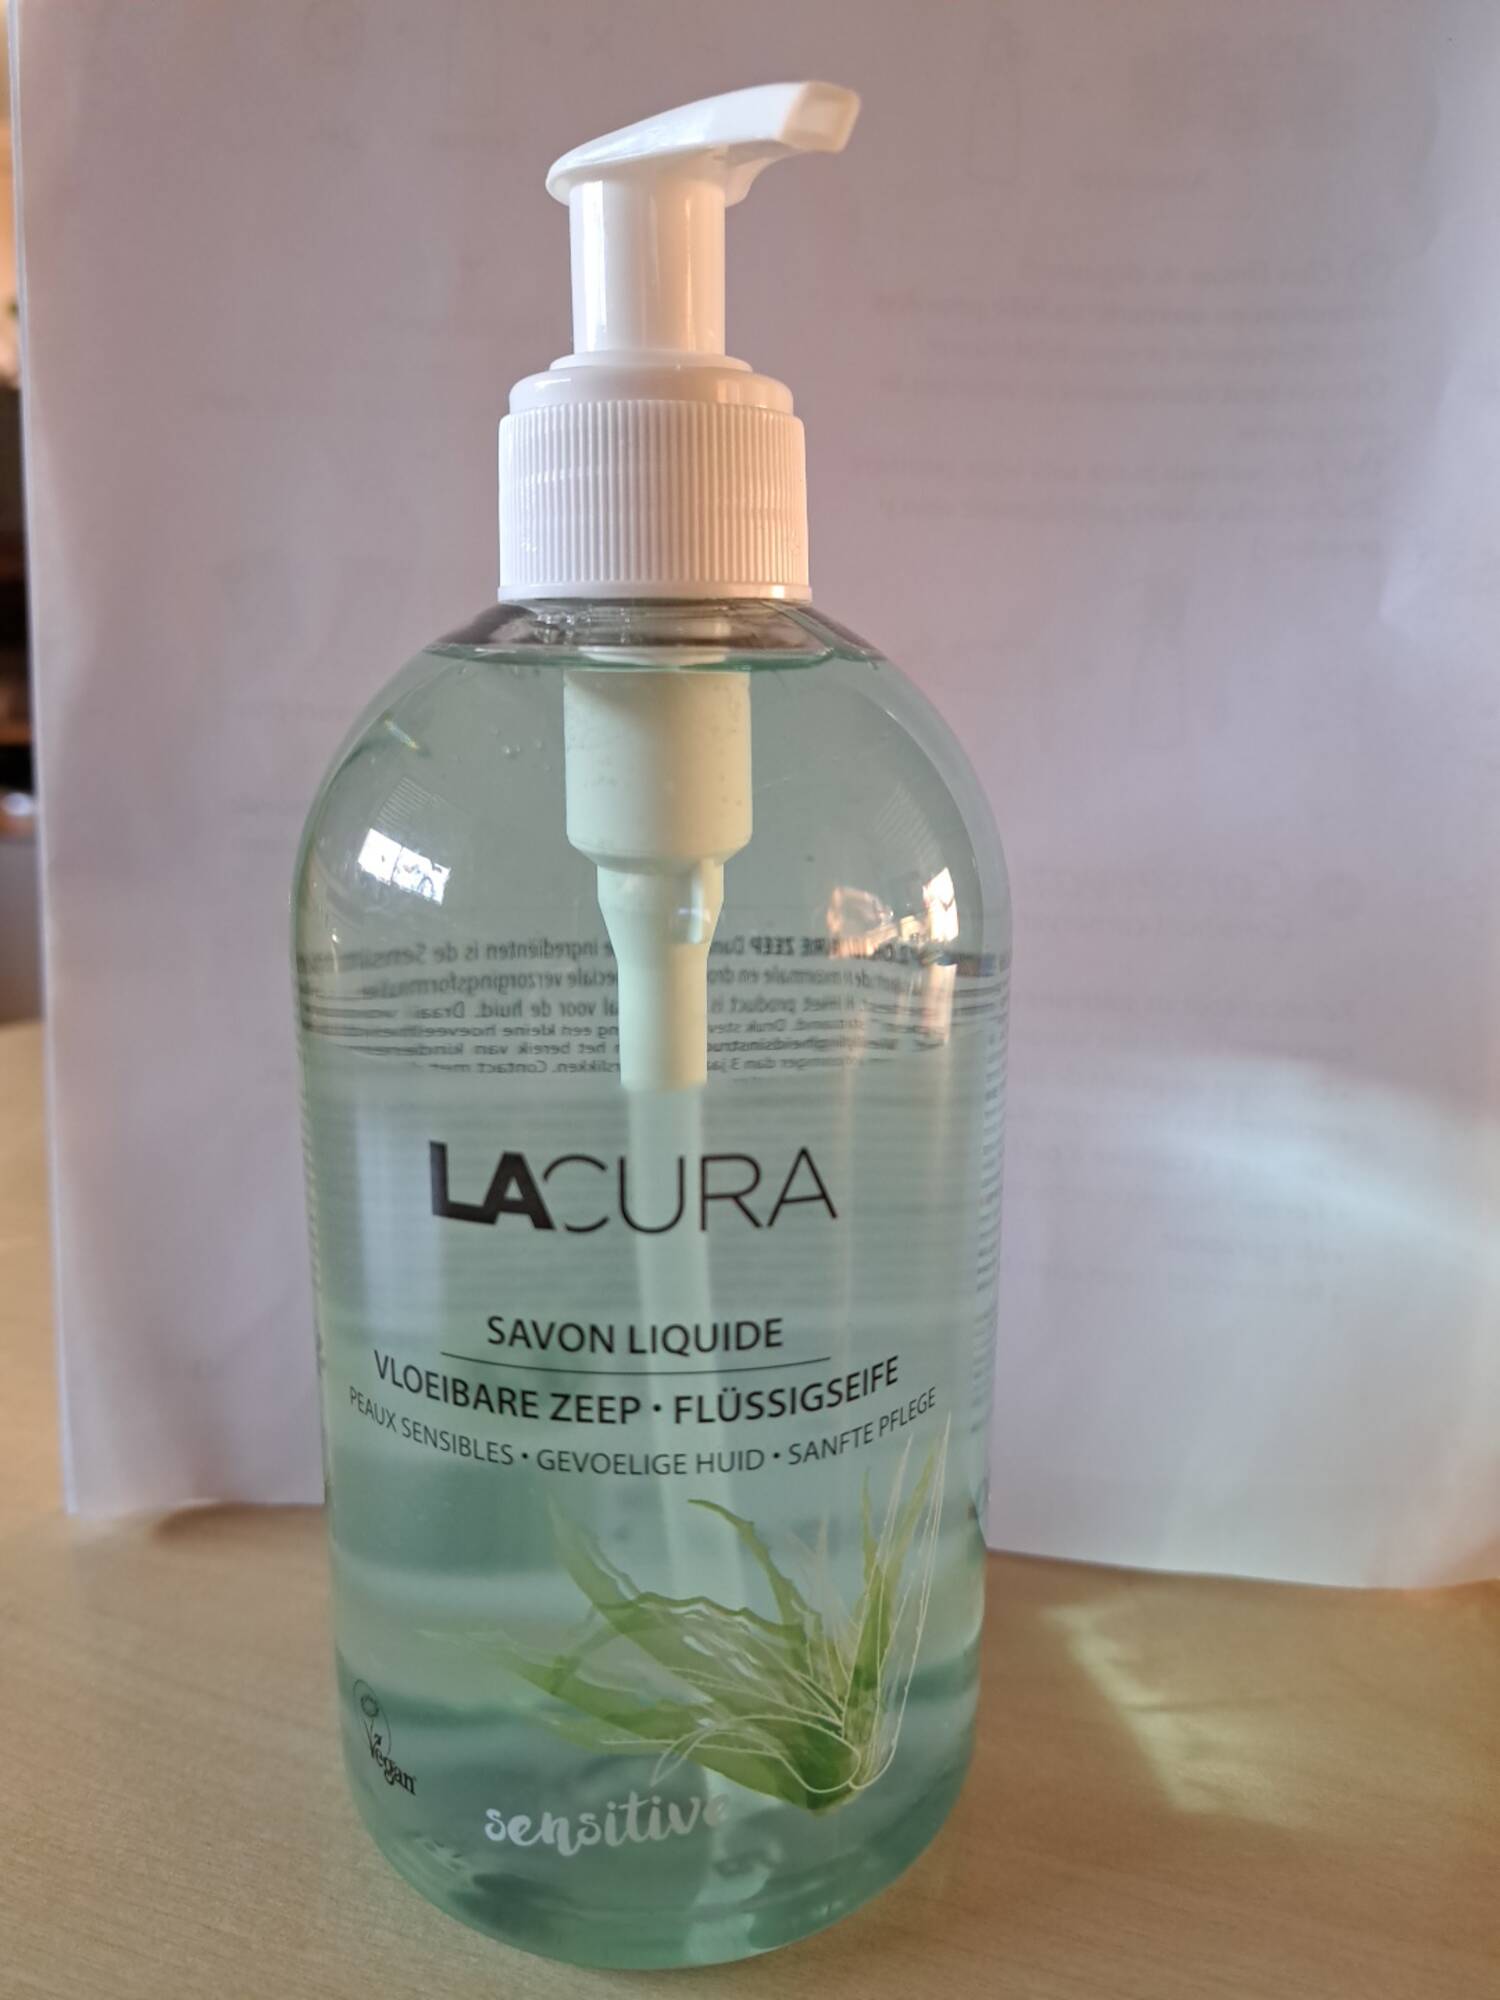 LACURA - Savon liquide sensitive